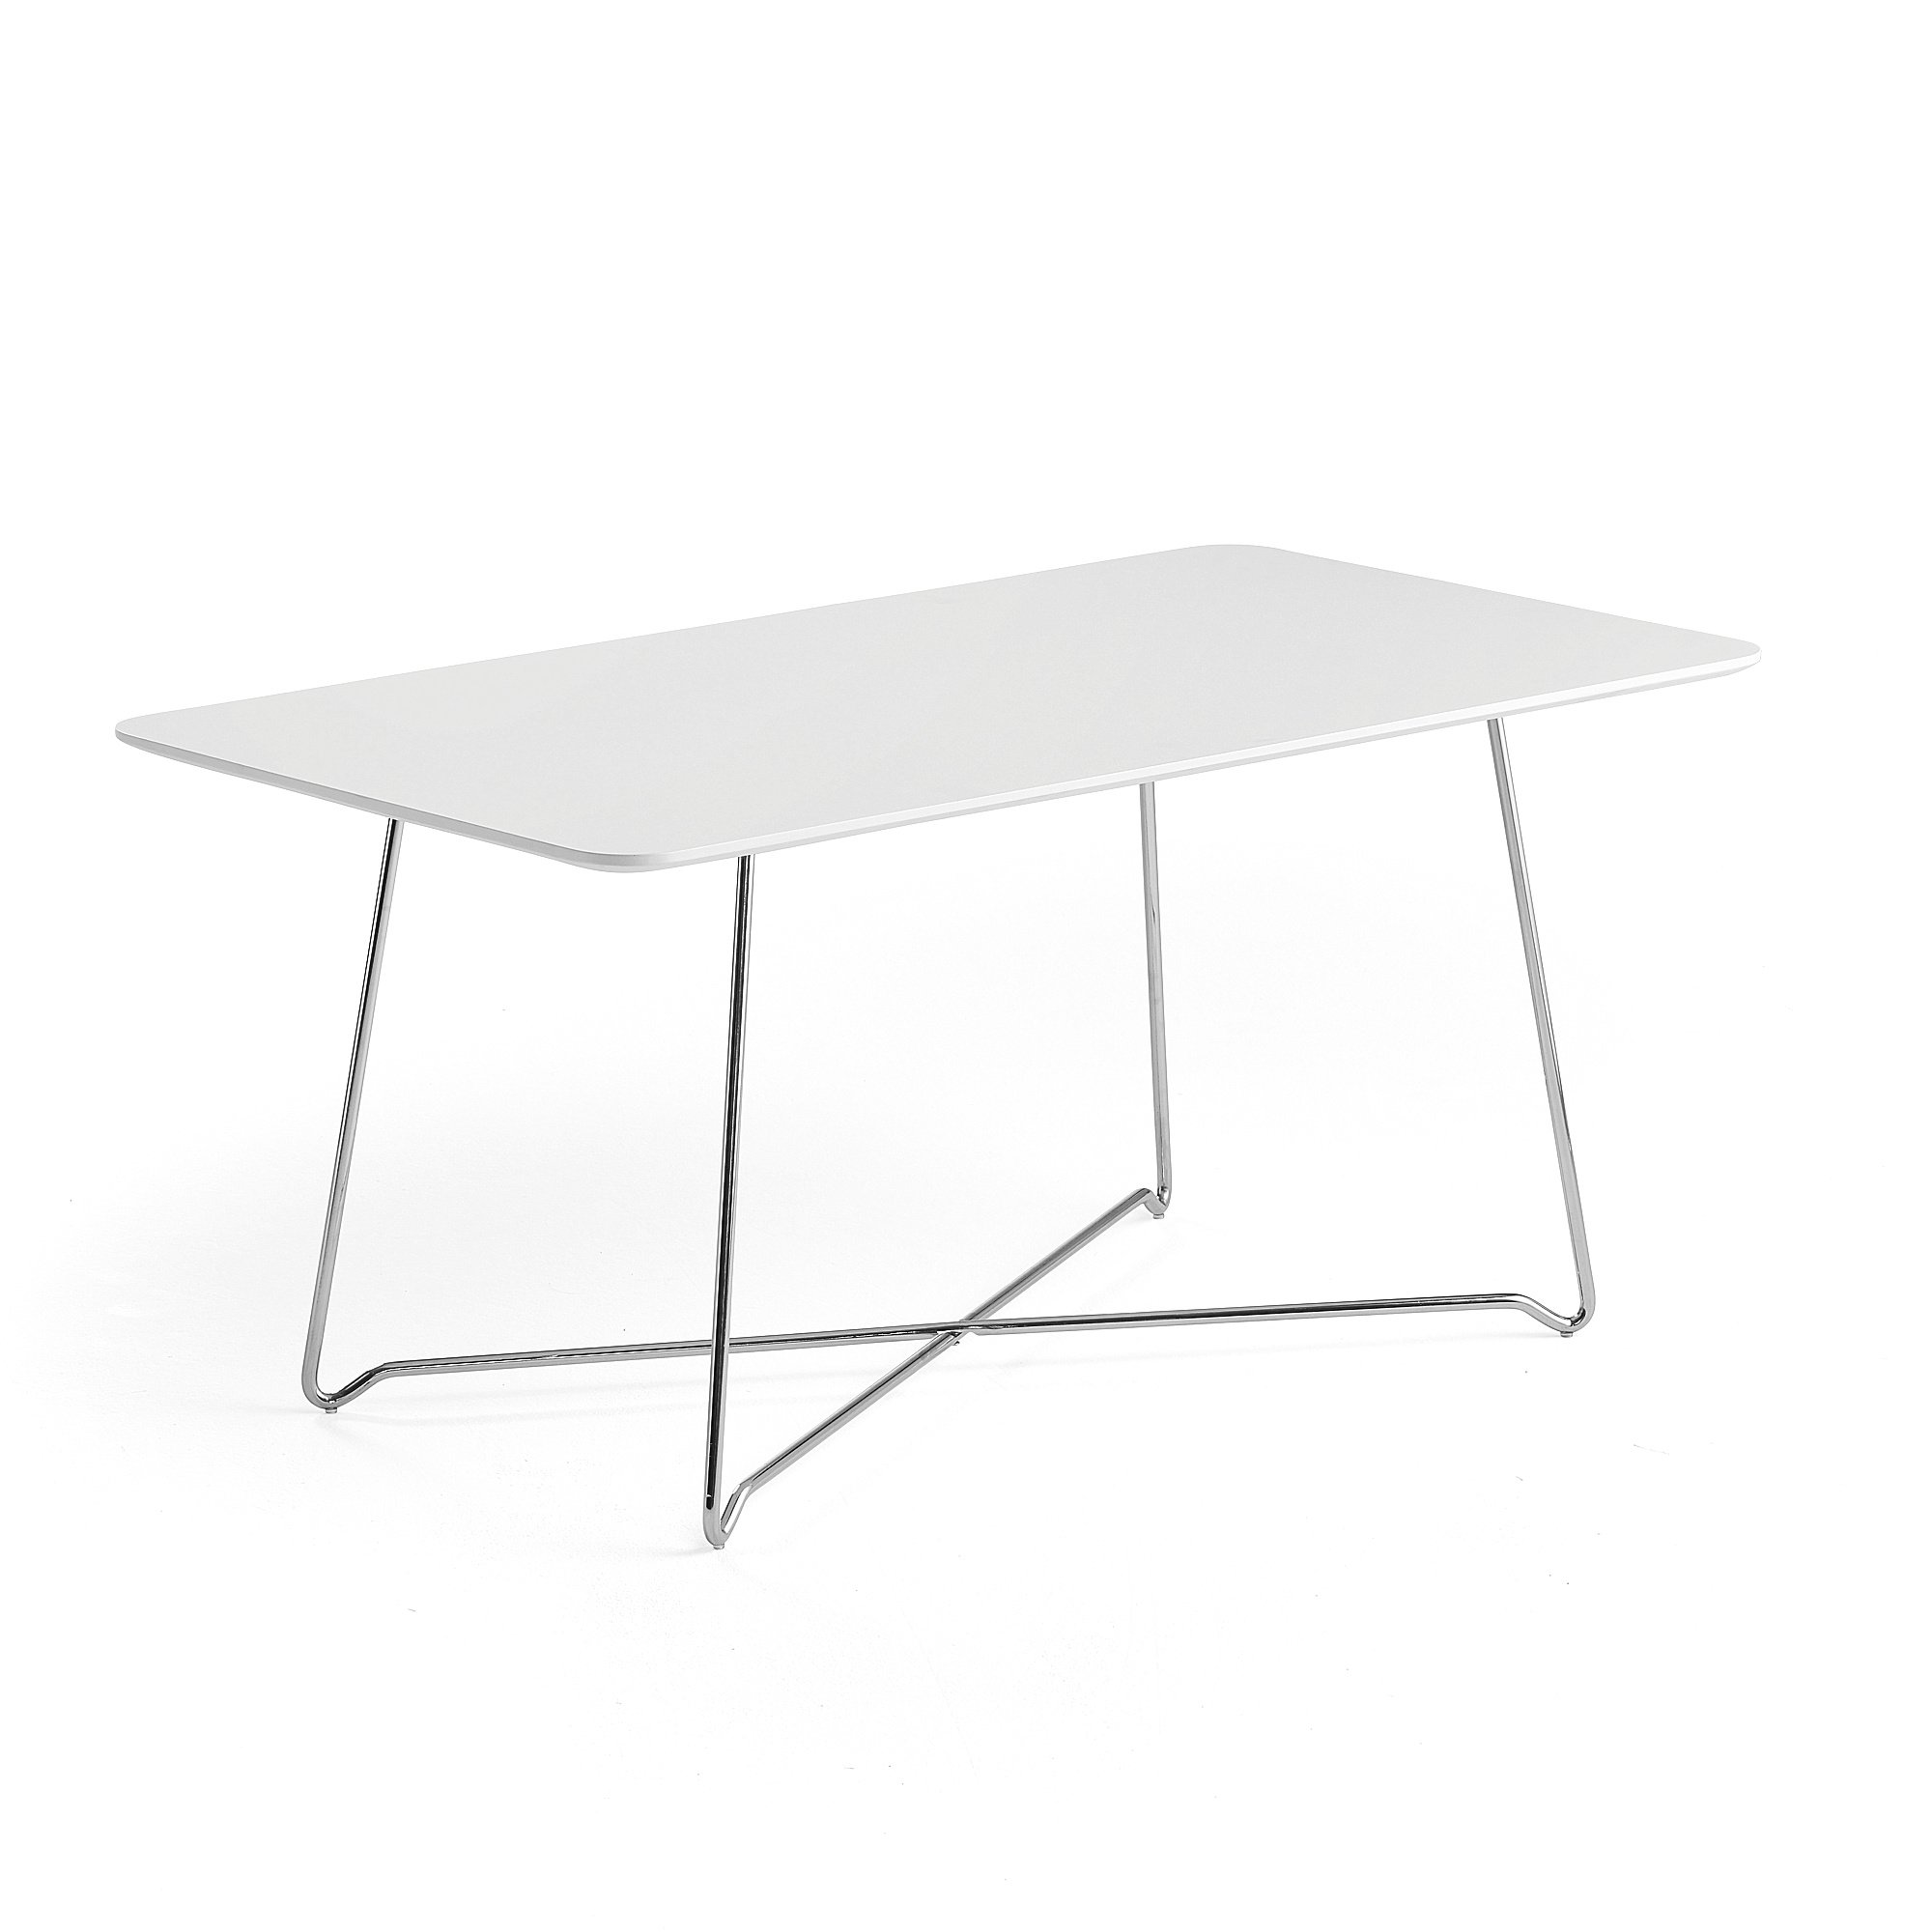 Kaviarenský stôl IRIS, 1100x600 mm, chróm, biela